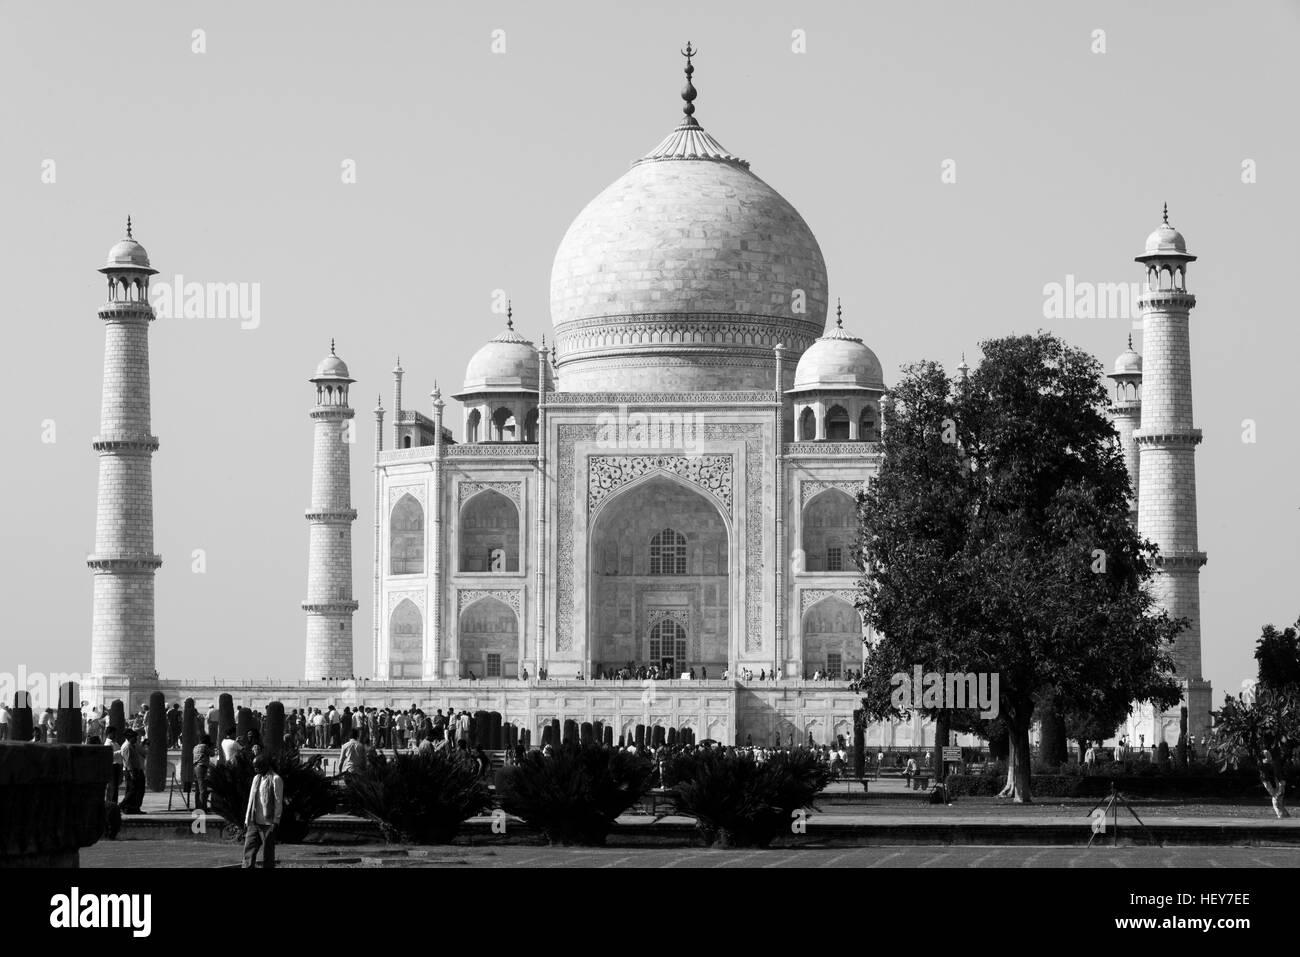 Taj Mahal, patrimonio mundial de la unesco, Agra, India. Foto de stock